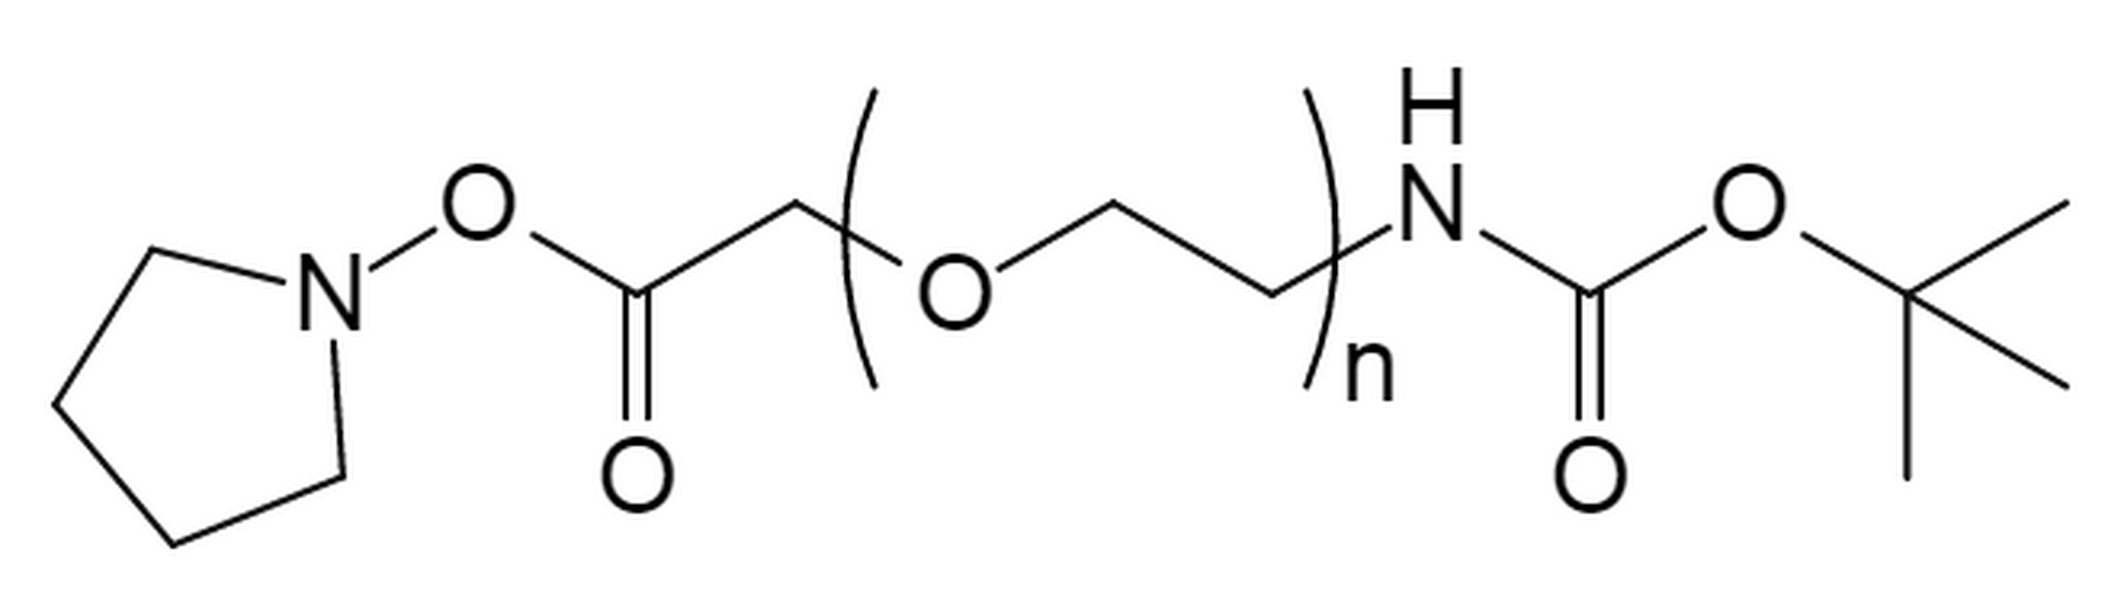 t-Boc Amine PEG Succinimidyl Carboxymethyl Ester,MW 3.5K